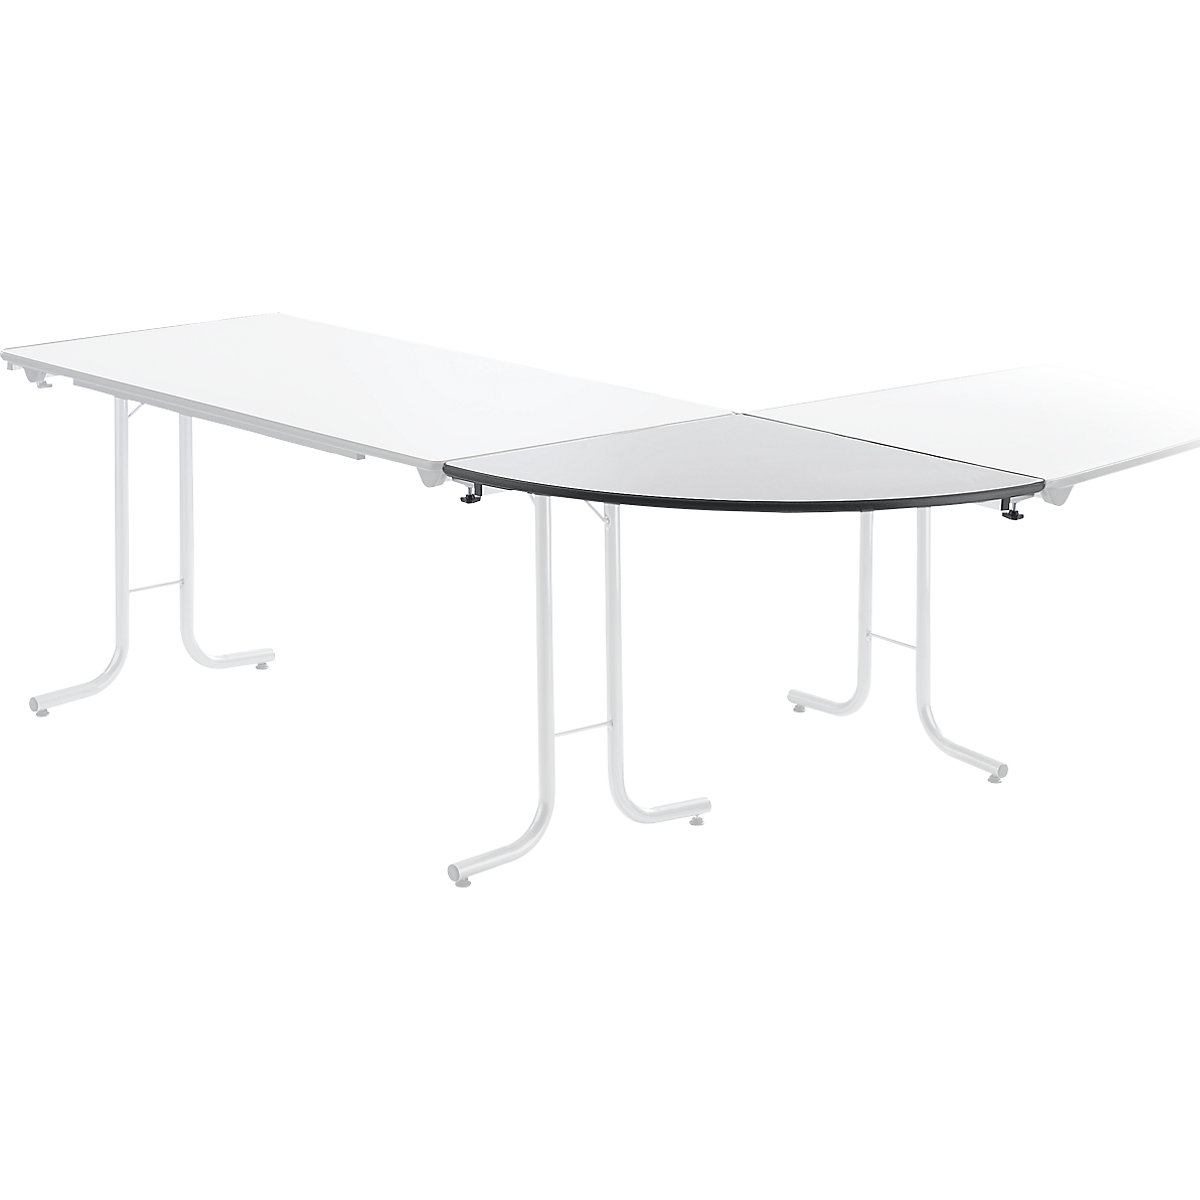 Prídavný stôl ku sklápaciemu stolu, tvar dosky štvrťkruh, 700 x 700 mm, podstavec strieborná, doska svetlošedá-3